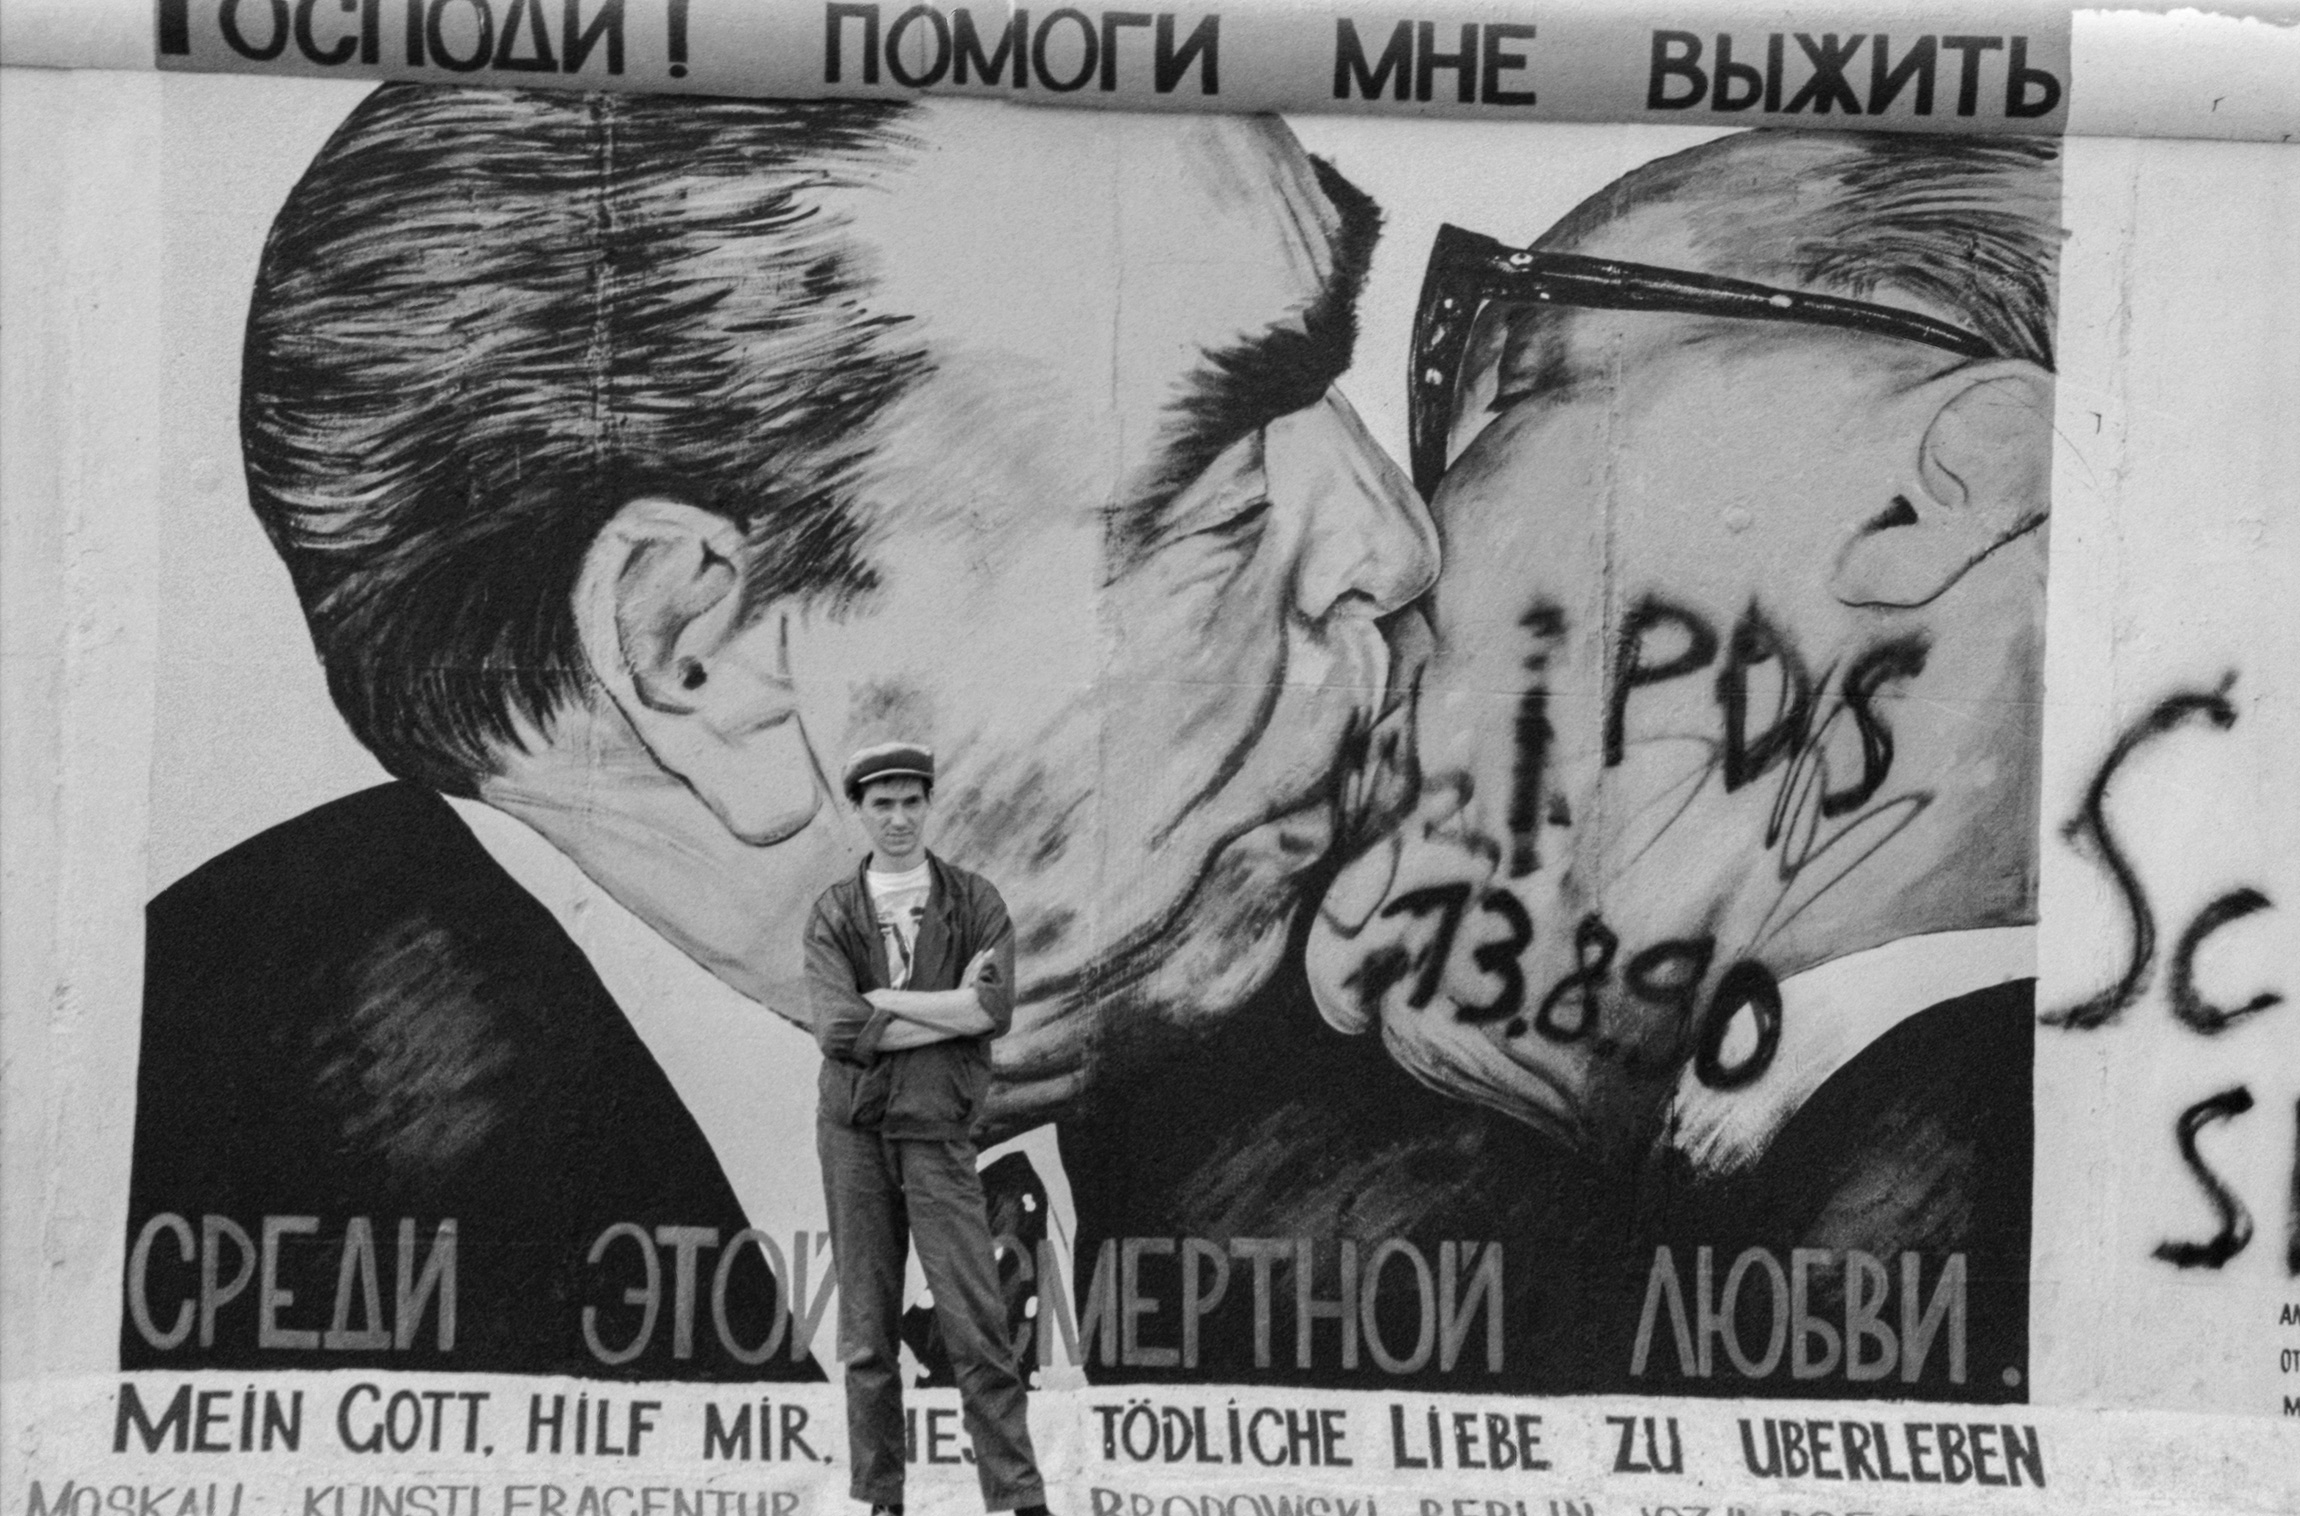 На фото: Дмитрий Врубель у своего граффити во время выставки советских художников-авангардистов на восточной стороне Берлинской стены, август 1990 года

Дмитрий Врубель родился в Москве. Его дед по отцовской линии был внучатым племянником художника Михаила Врубеля. Свою первую картину &laquo;Суд Пилата&raquo; Дмитрий написал в 15 лет. В 1979 году поступил в МГПИ, в 1983-м стал членом Союза художников. В 1990-м переехал в Германию, где на Берлинской стене написал самую известную свою работу &laquo;Братский поцелуй&raquo;, изображающую поцелуй генсека СССР Леонида Брежнева и лидера ГДР Эрика Хонеккера.

Художник умер 14 августа из-за осложнений после перенесенного коронавируса. Ему было 62 года.

Читать больше